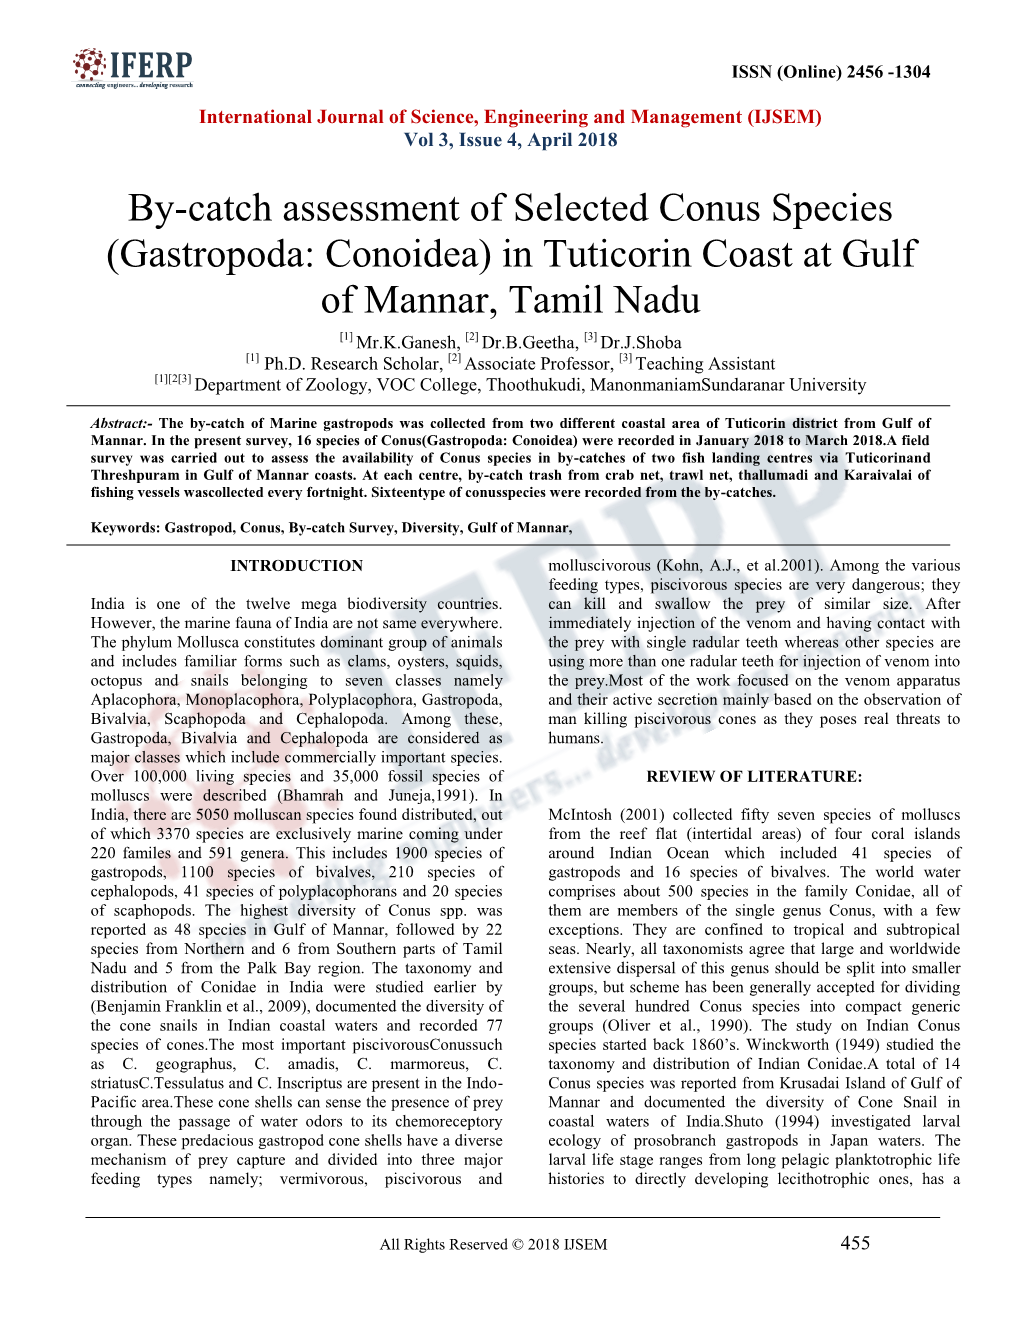 (Gastropoda: Conoidea) in Tuticorin Coast at Gulf of Mannar, Tamil Nadu [1] Mr.K.Ganesh, [2] Dr.B.Geetha, [3] Dr.J.Shoba [1] Ph.D